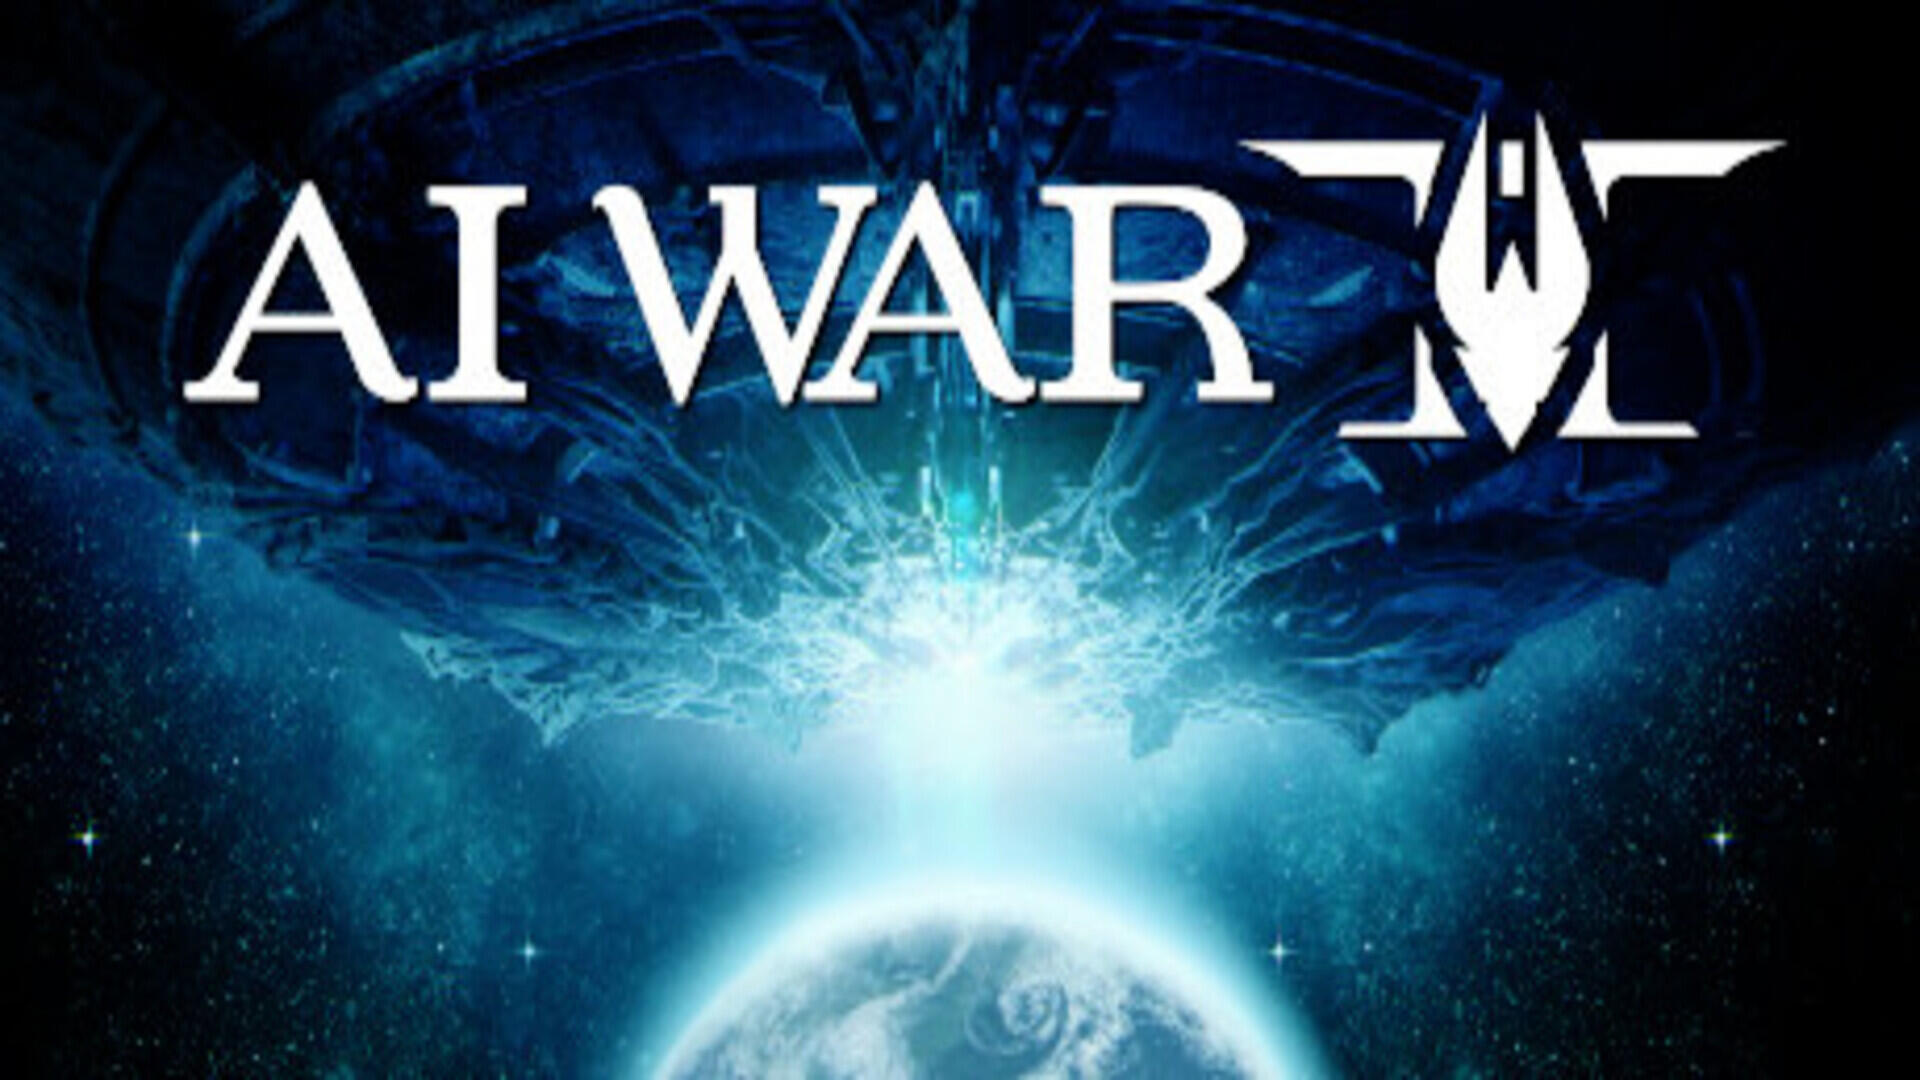 AI War 2 – Free Download (v5.574 + DLCs)